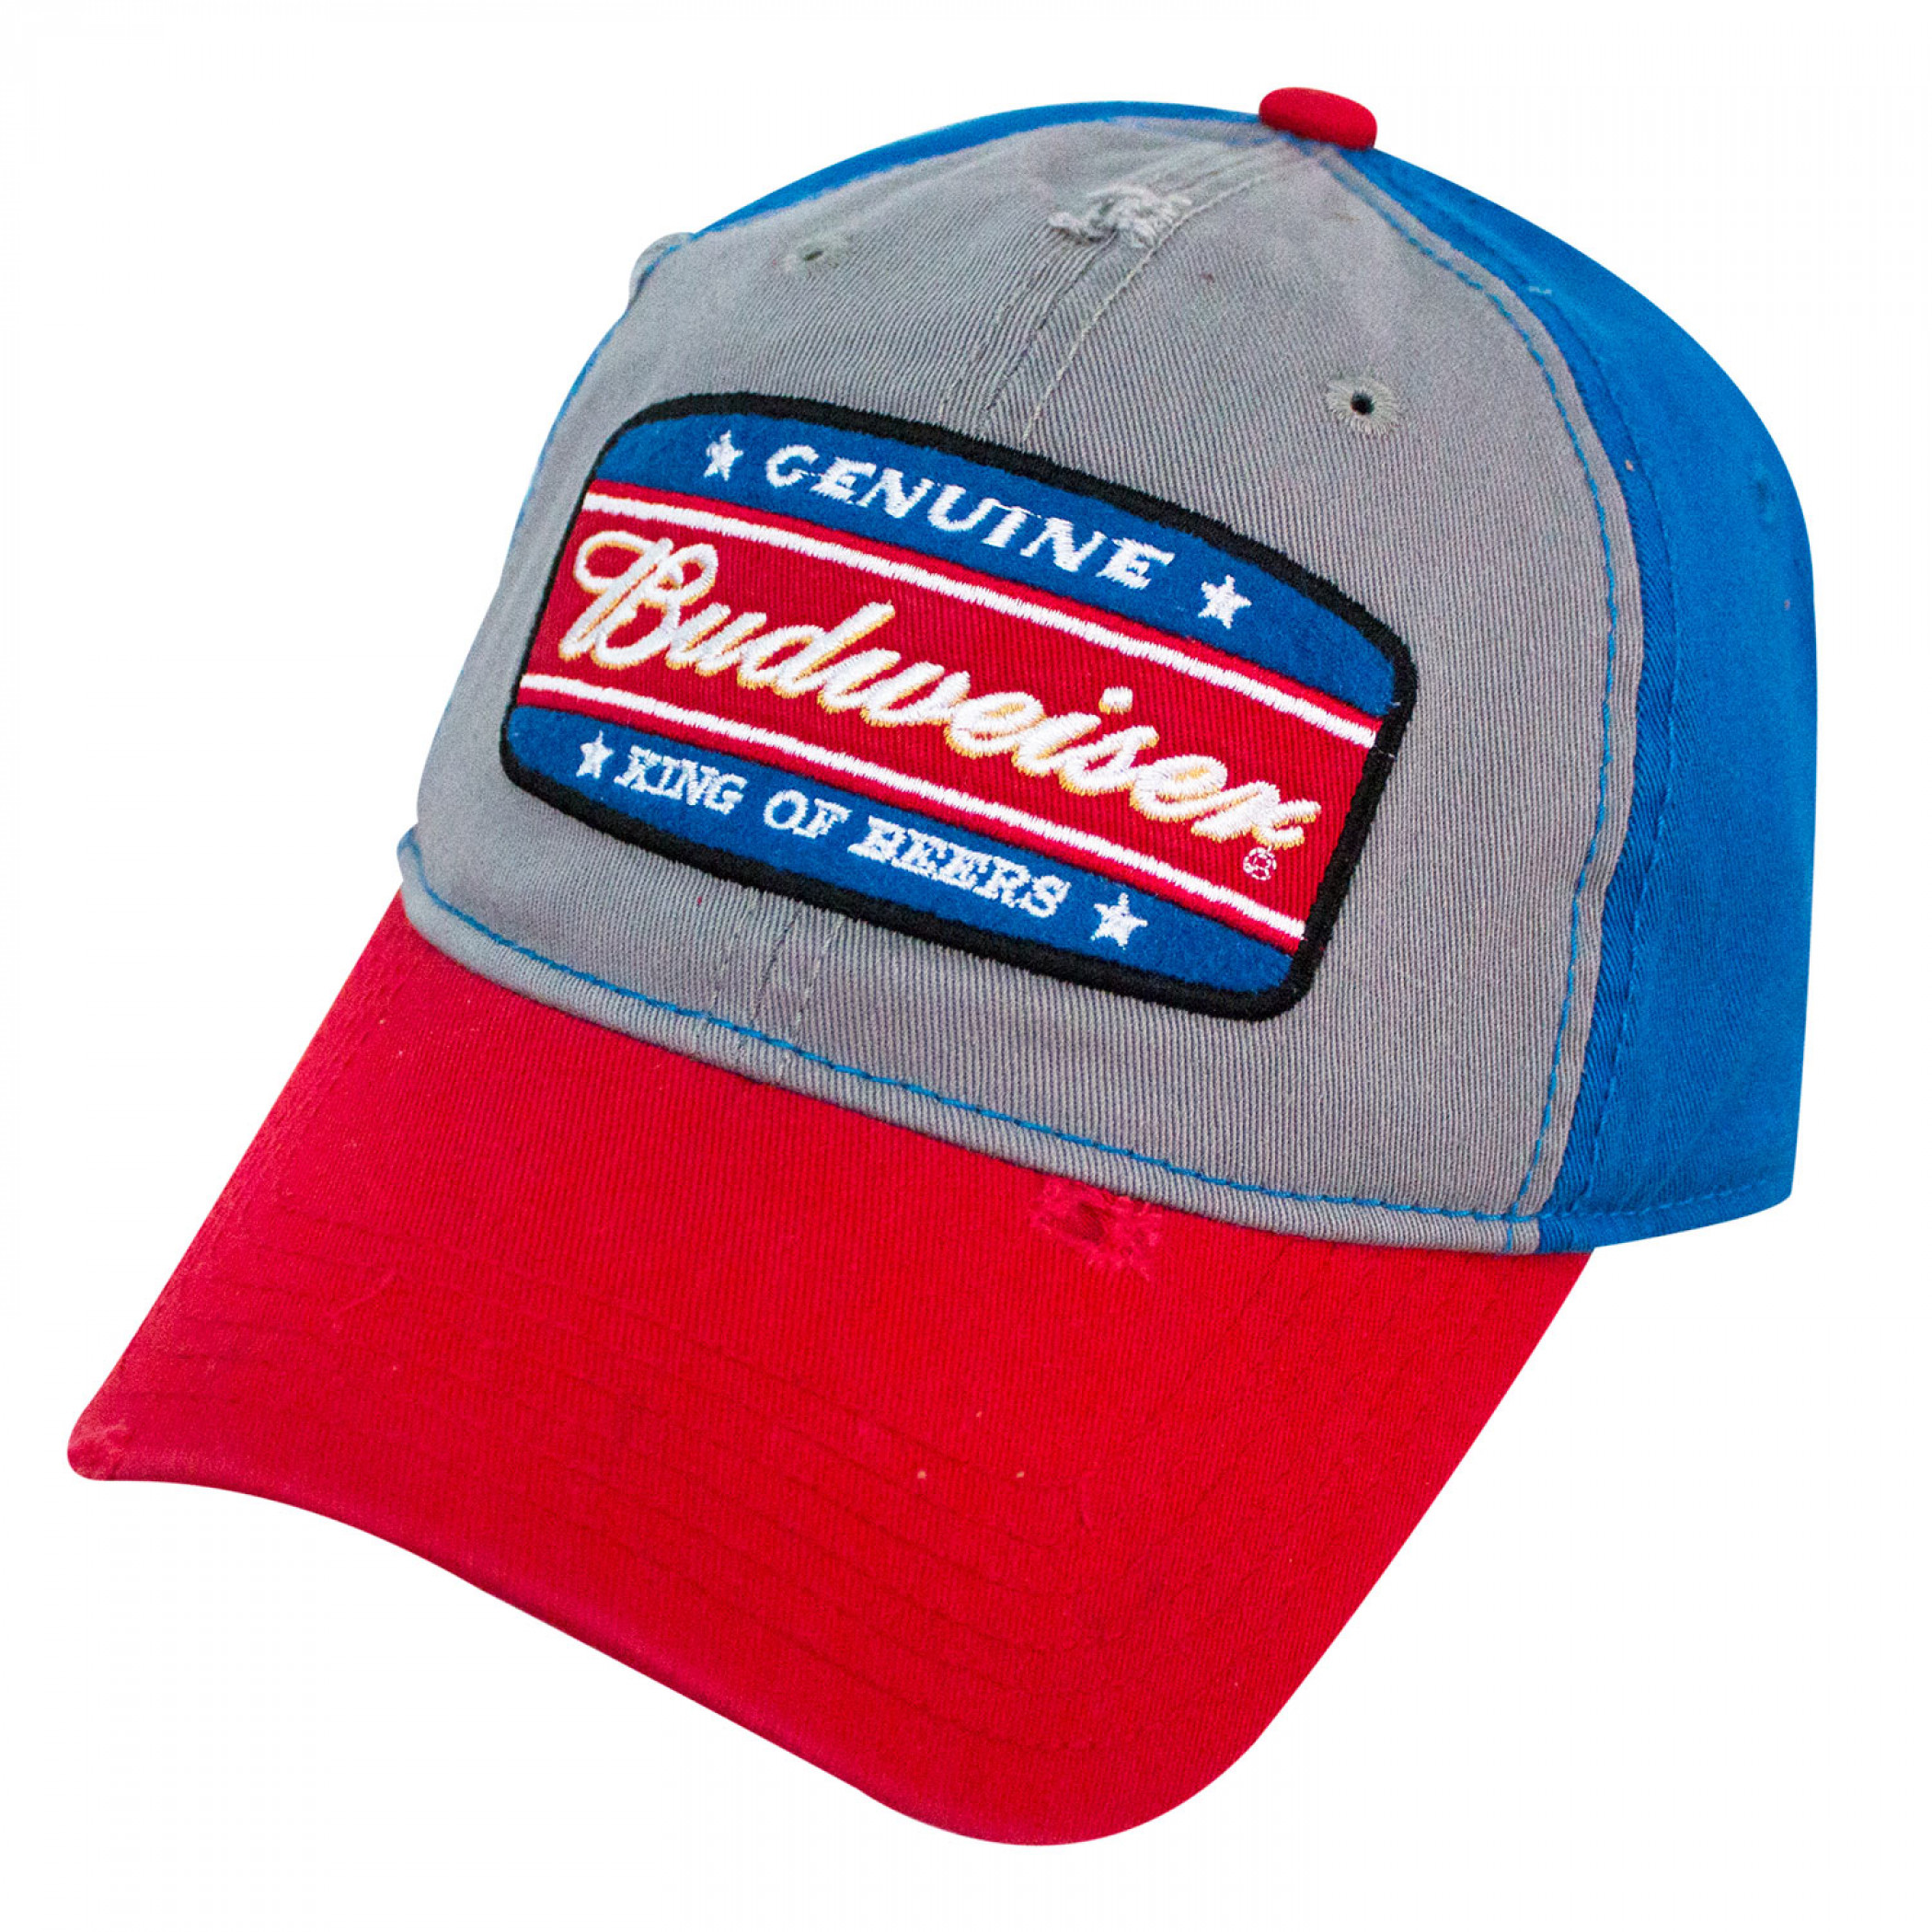 Budweiser King Of Beers Garnet Wash Snapback Hat